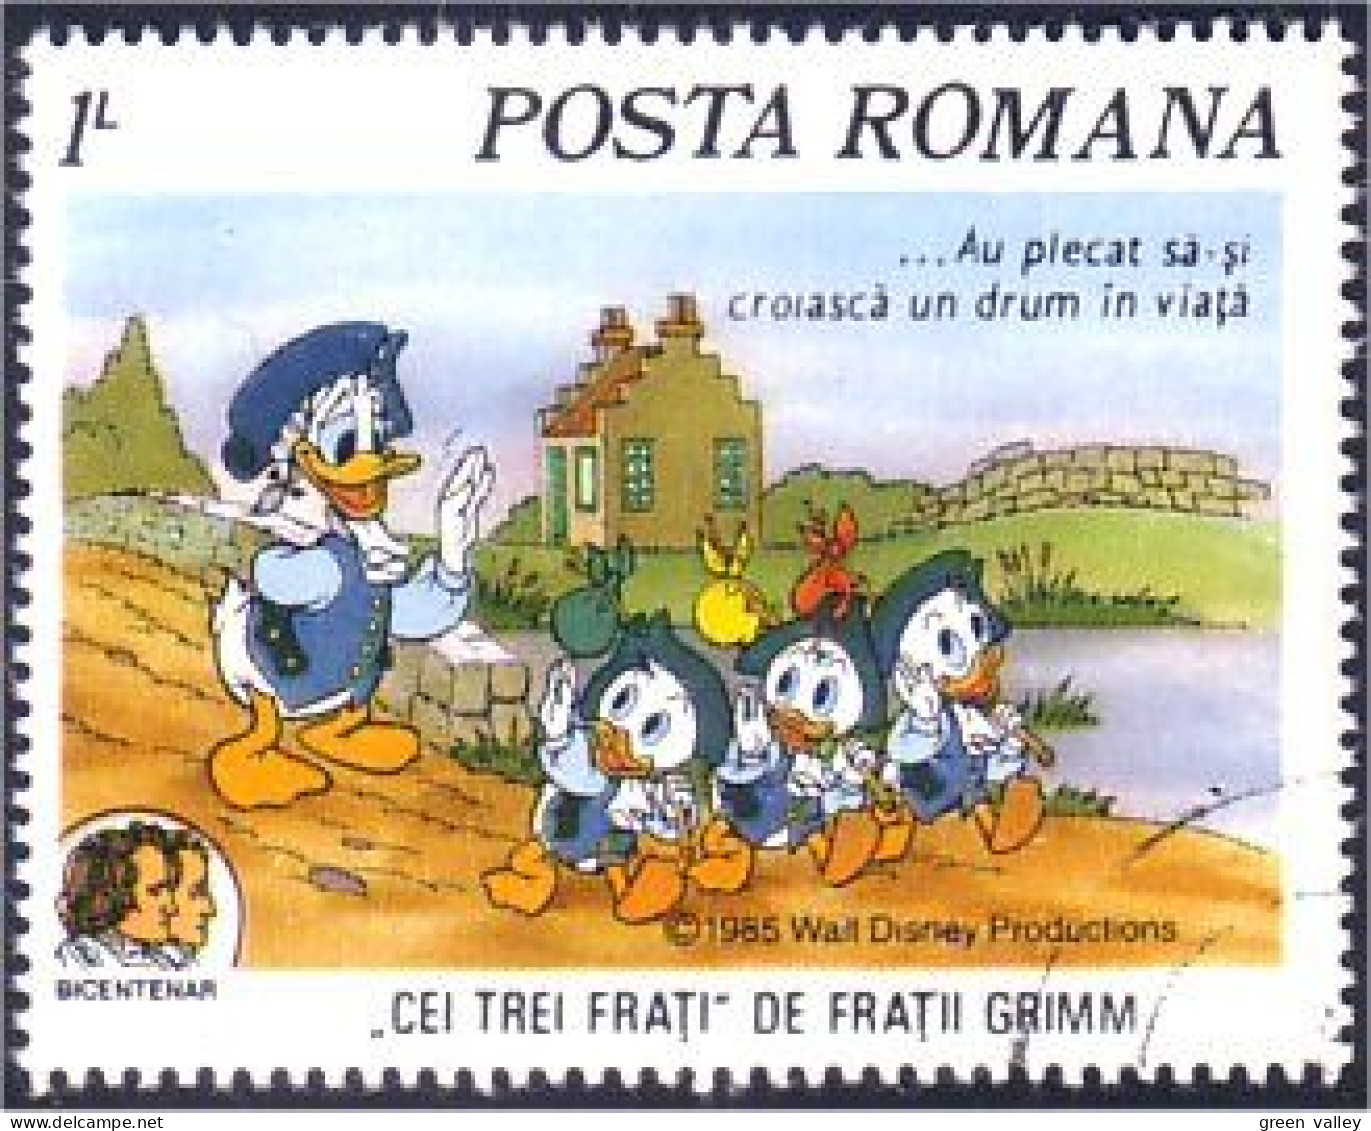 766 Roumanie Disney Bicentenar Donald Bicentennaire Bicentennial (ROU-34) - Unabhängigkeit USA